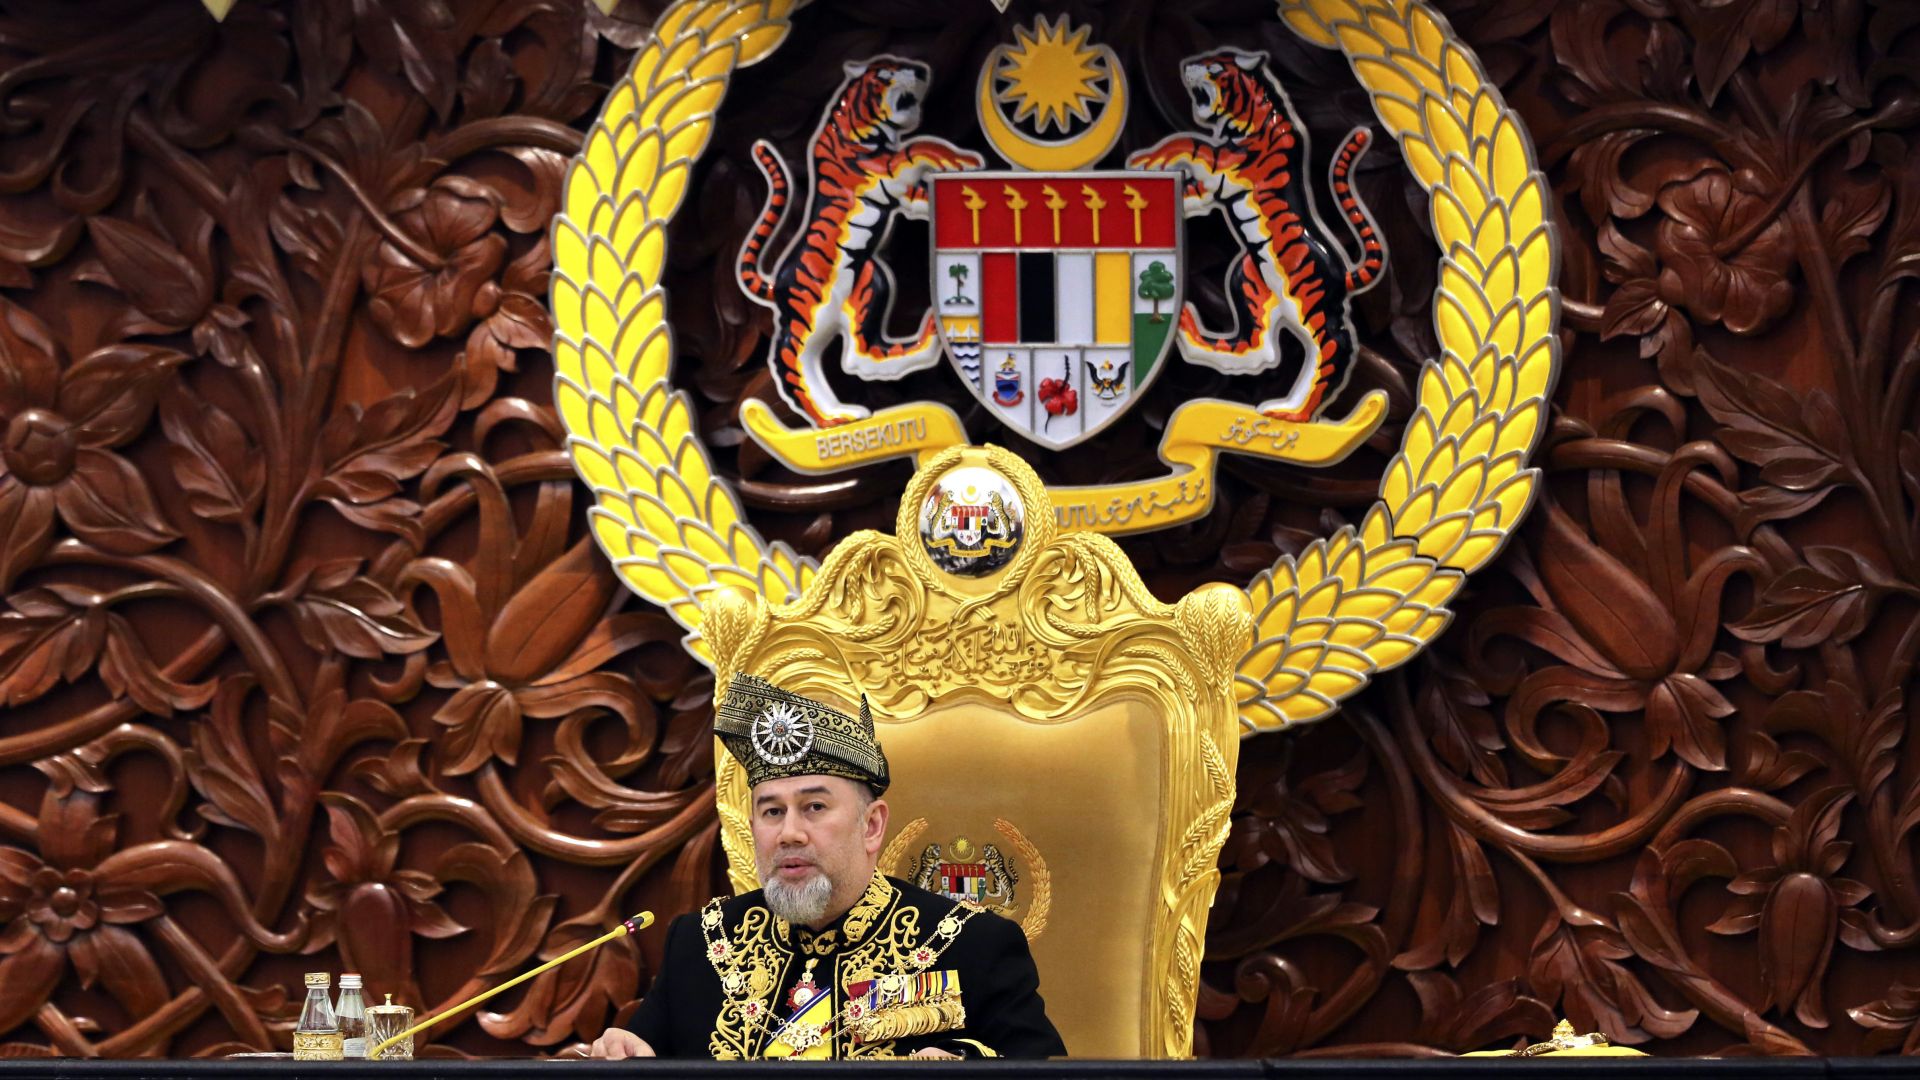 Върховният глава /кралят/ на Малайзия Мухамад Пети обяви днес, че